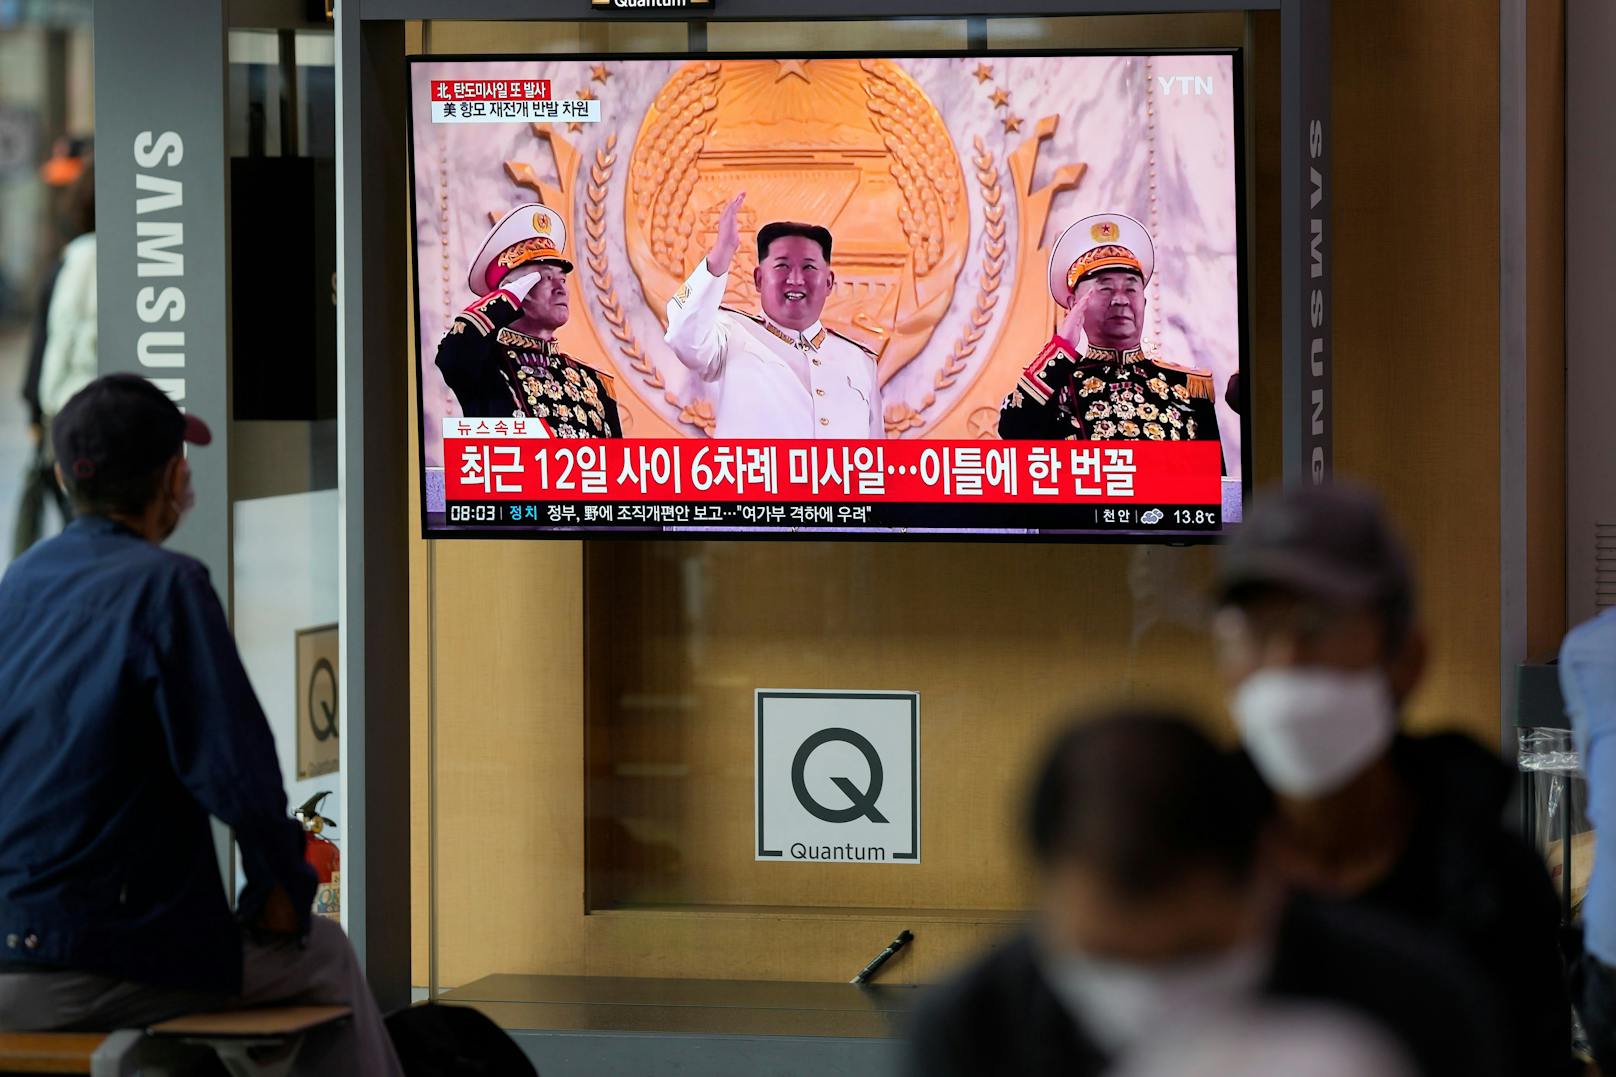 Der nordkoreanische Diktator Kim Jong-un lässt sich feiern. 